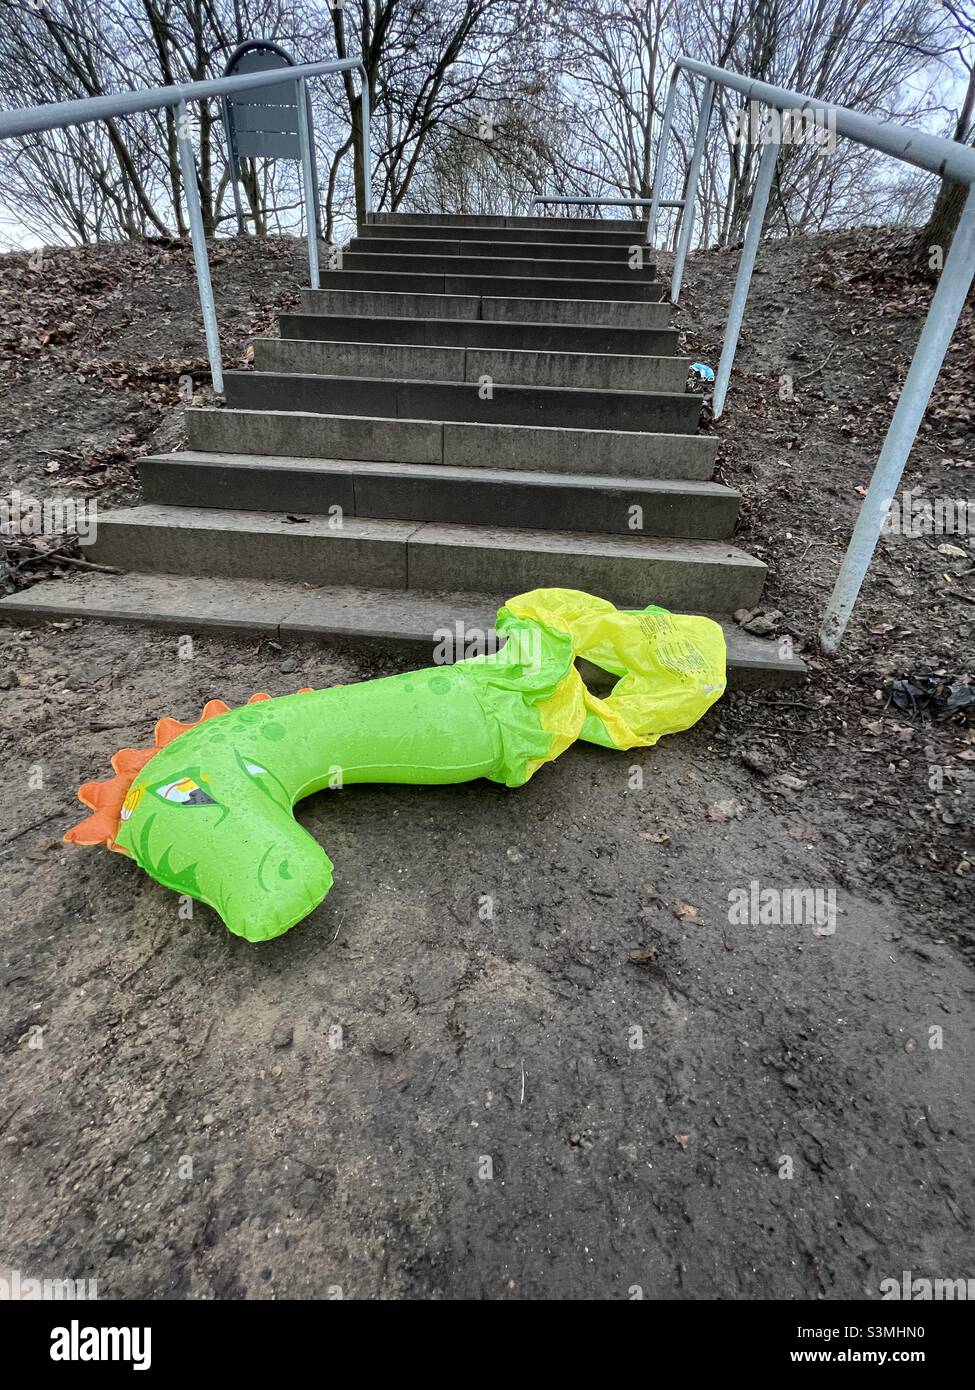 Ein grünes aufblasbares Spielzeug - ein Dinosaurier oder ein Drache - verlassen, beschädigt, am Boden der Treppe auf dem Boden. Eine traurige Geschichte, verlassen, verletzt, verloren zu sein. Stockfoto